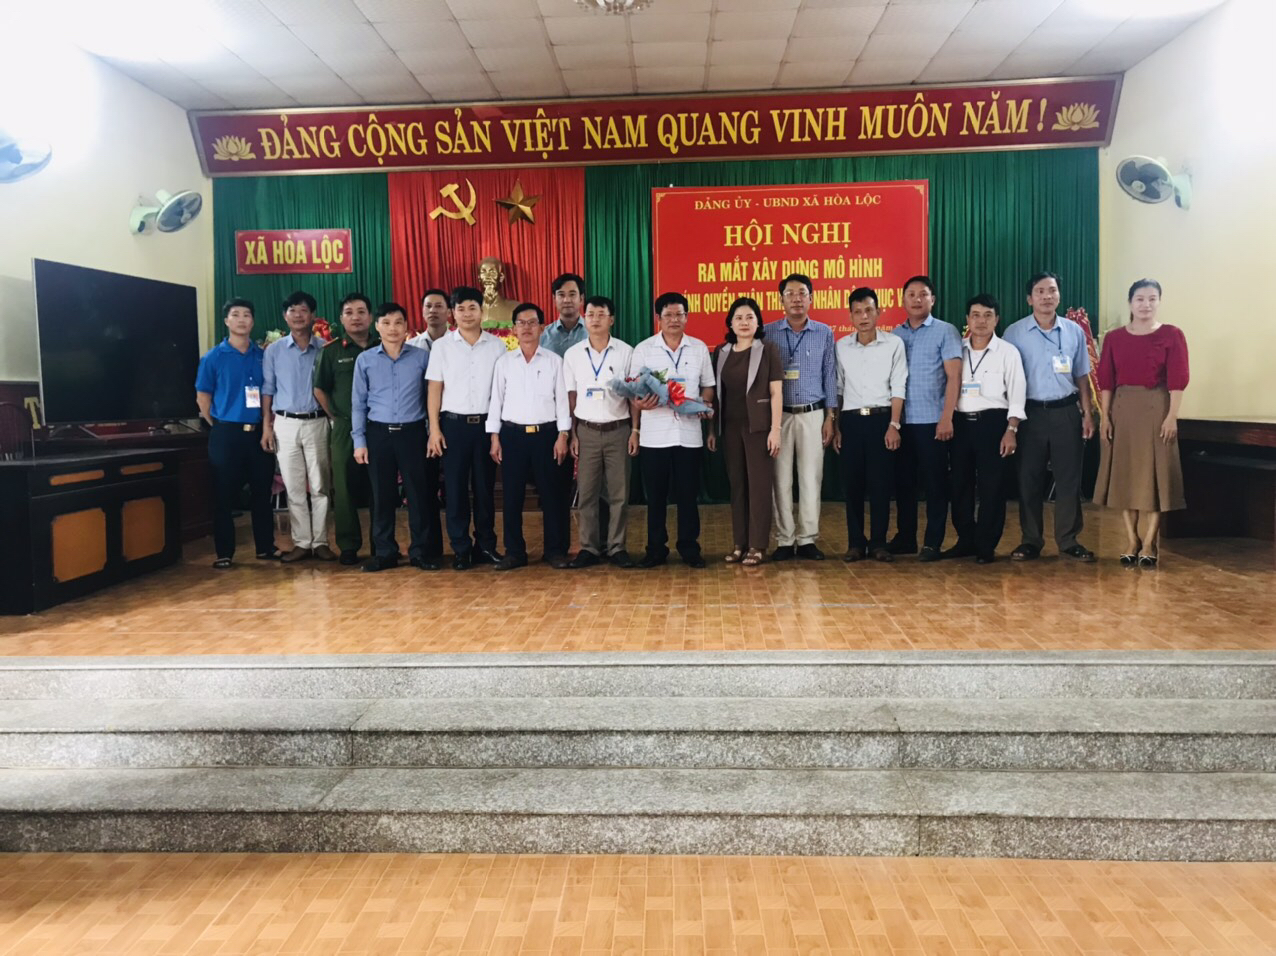 Xã hòa lộc - huyện Hậu Lộc tổ chức hội nghị ra mắt xây dựng chính quyền thân thiện; Vì nhân dân phục vụ.